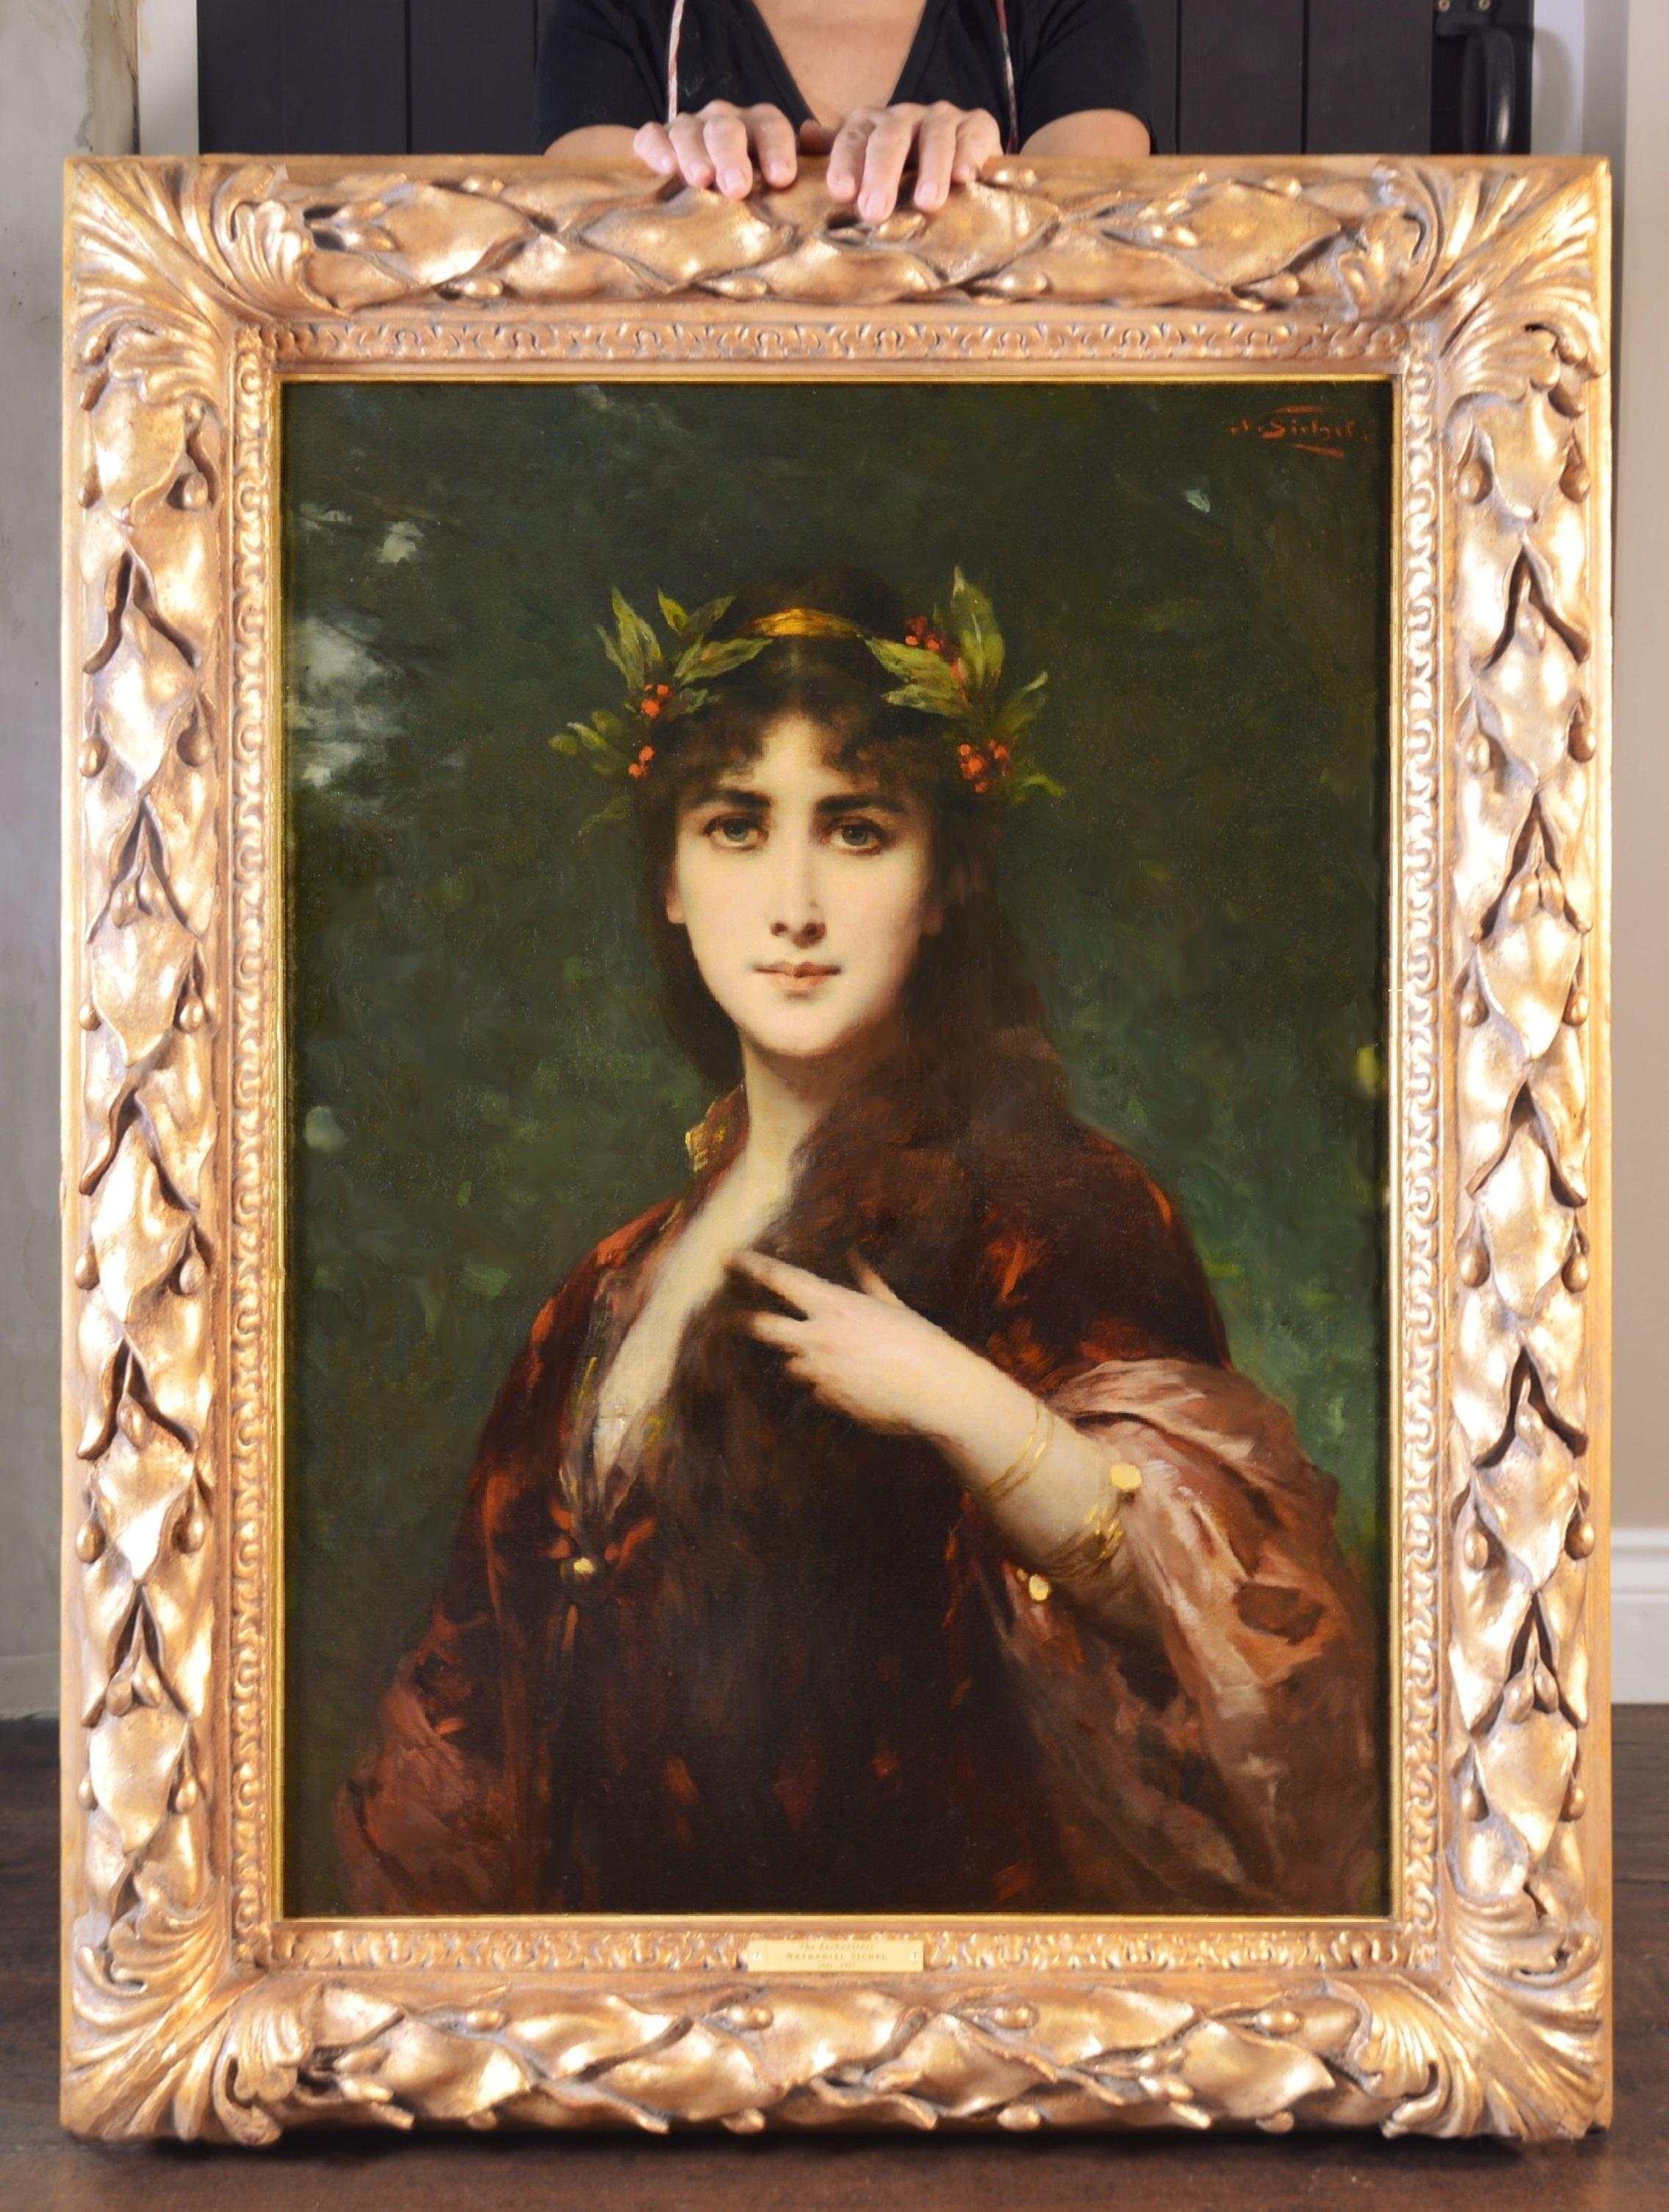 Figurative Painting Nathaniel Sichel - L'Enchanteresse - Peinture à l'huile Belle Époque du 19e siècle - Portrait de beauté française